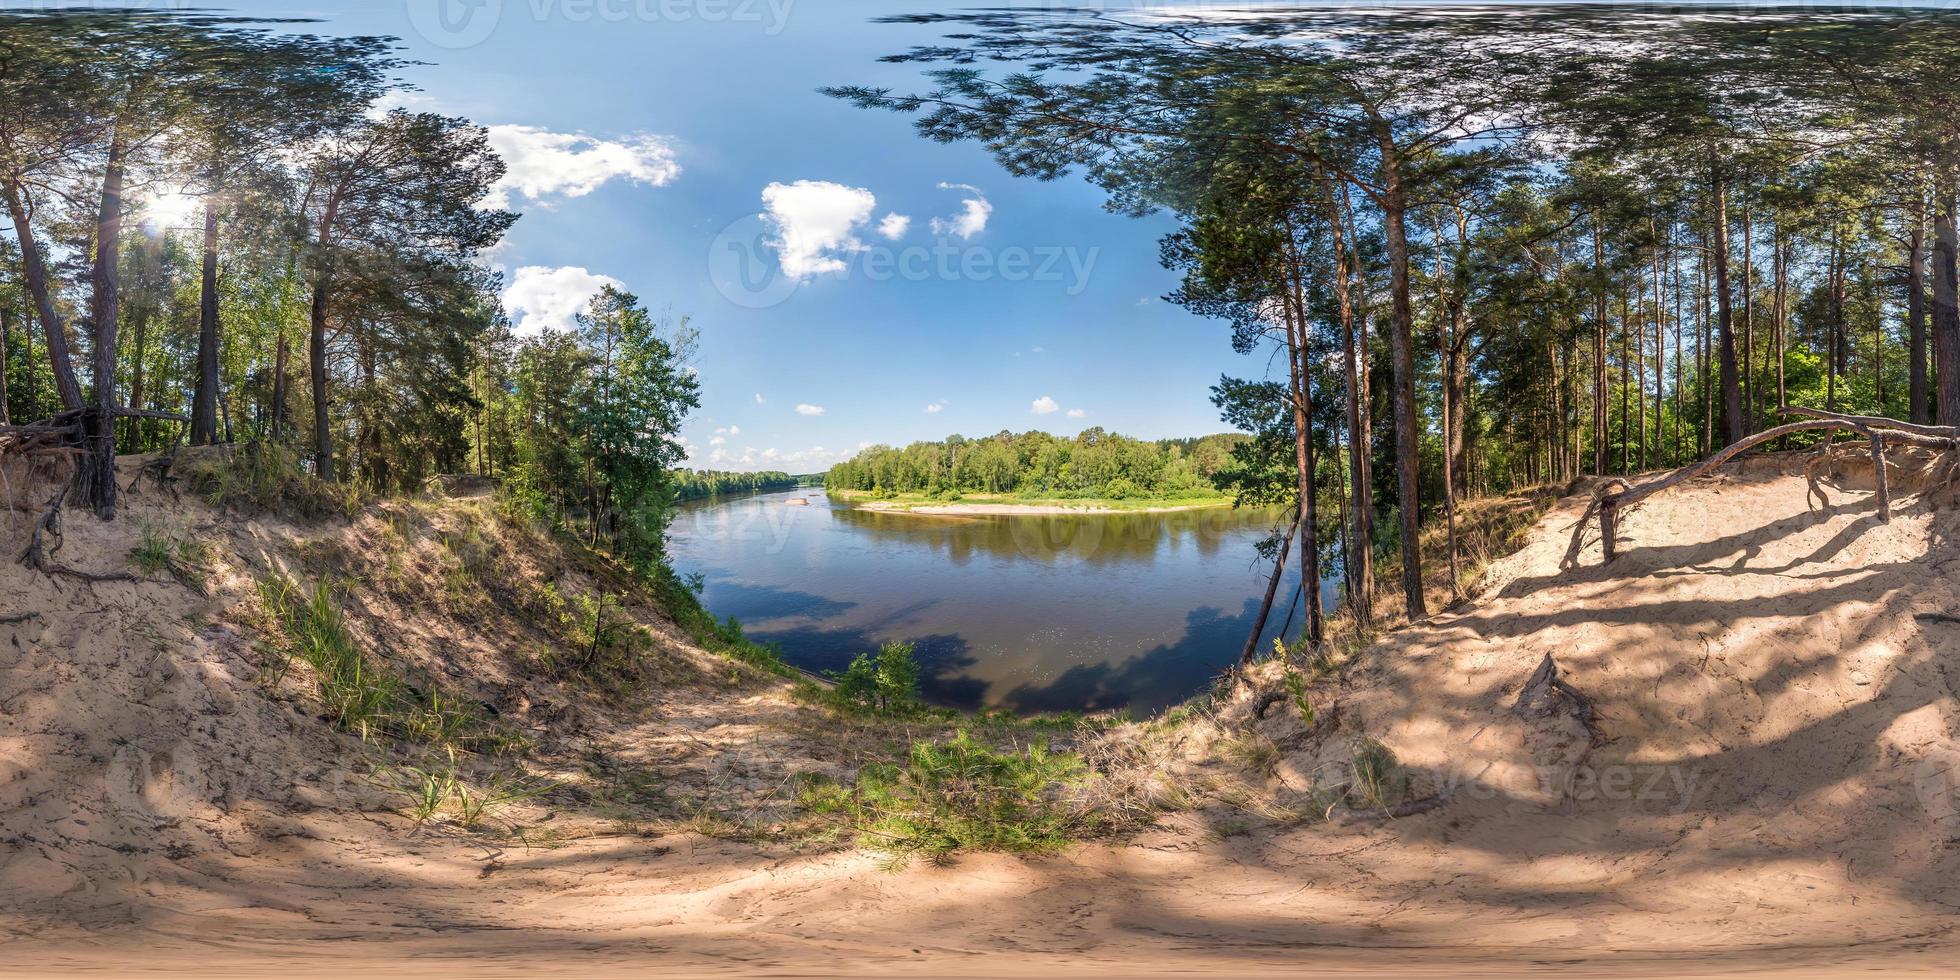 fullständigt sömlöst sfäriskt panorama 360 x 180 vinkelvy på branten av en bred flod i solig sommardag i ekvirektangulär projektion, skybox vr virtual reality-innehåll foto